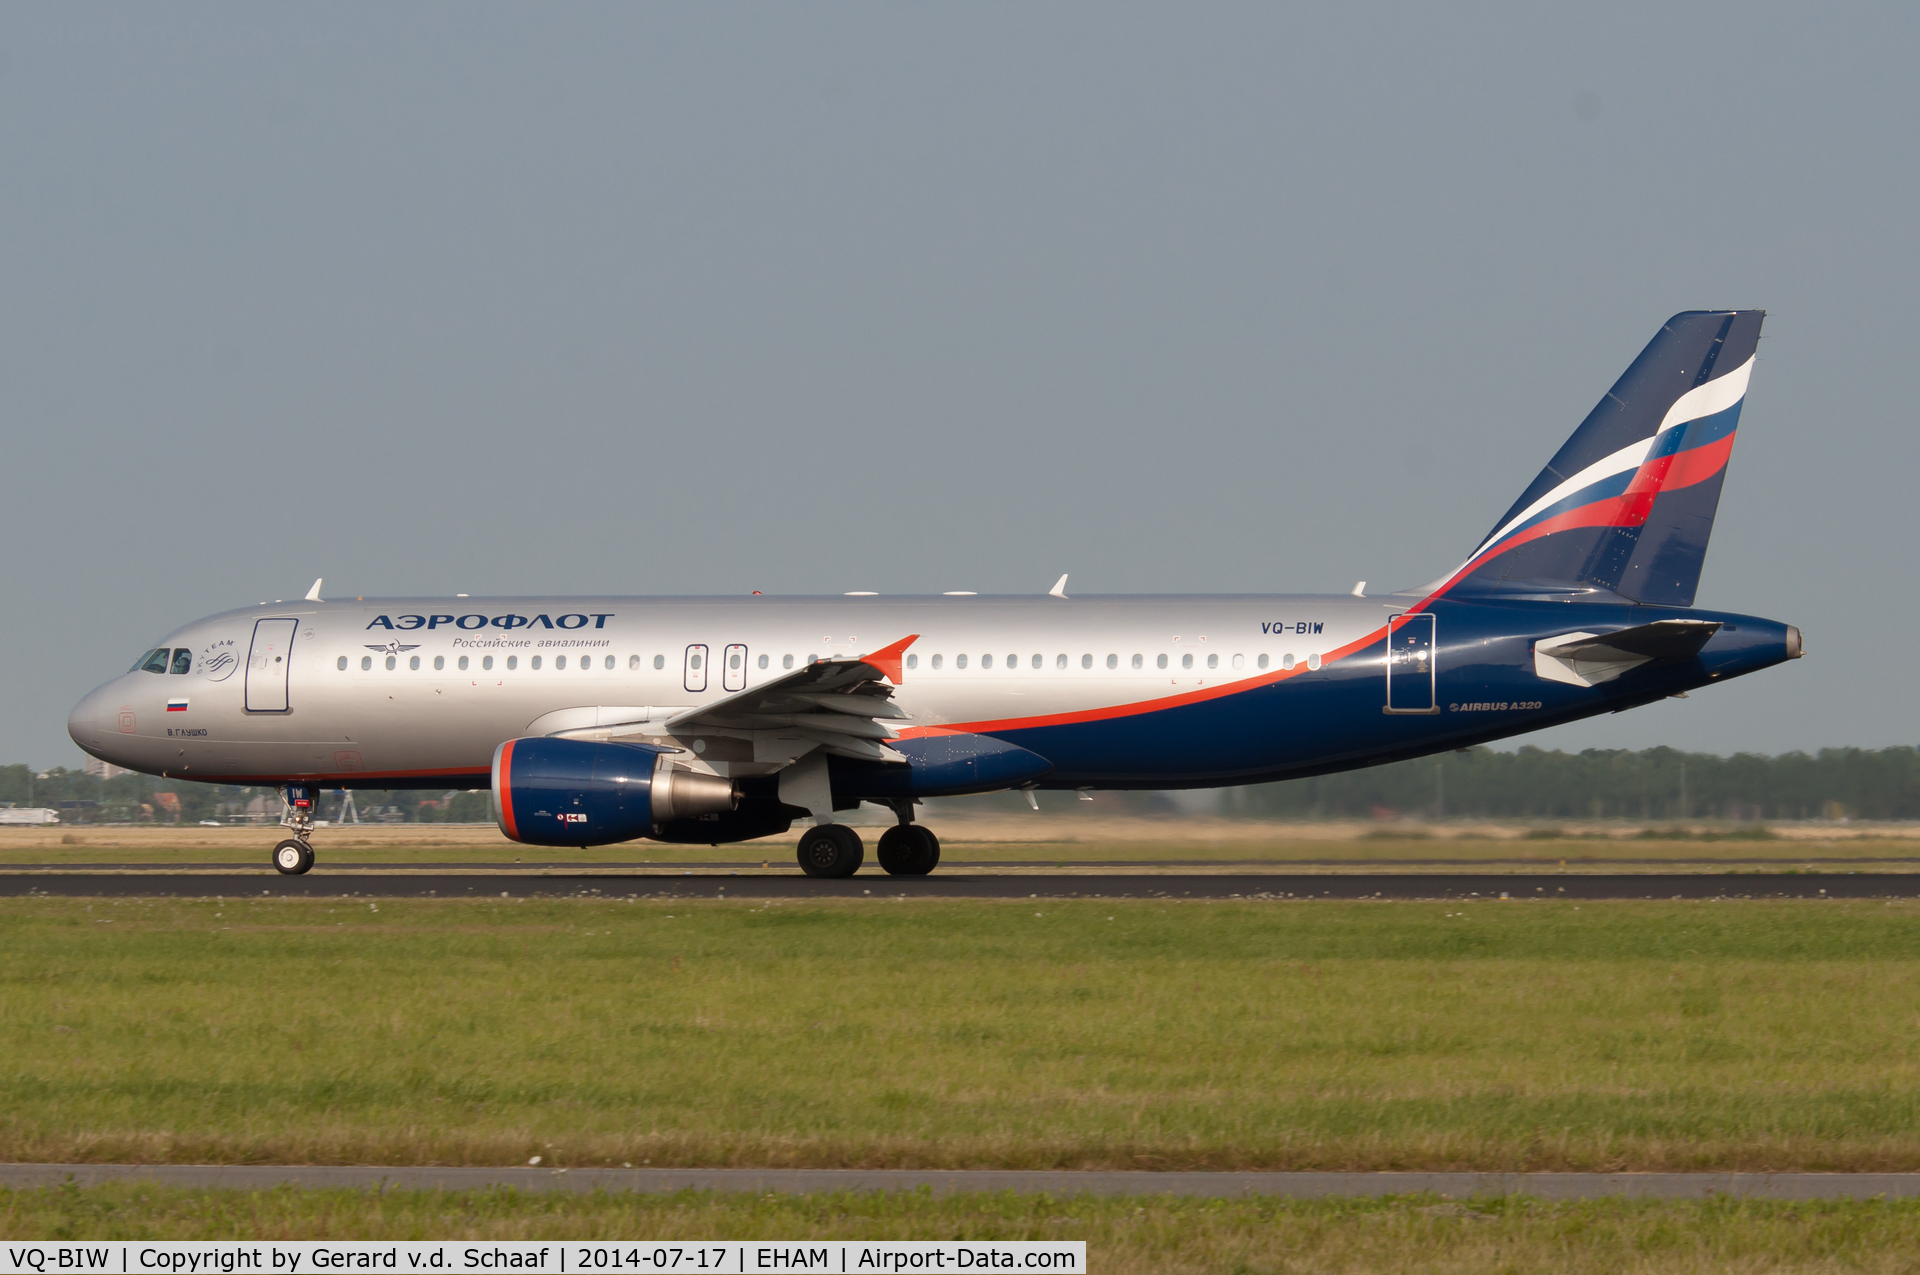 VQ-BIW, 2011 Airbus A320-214 C/N 4579, Schiphol, July 2014